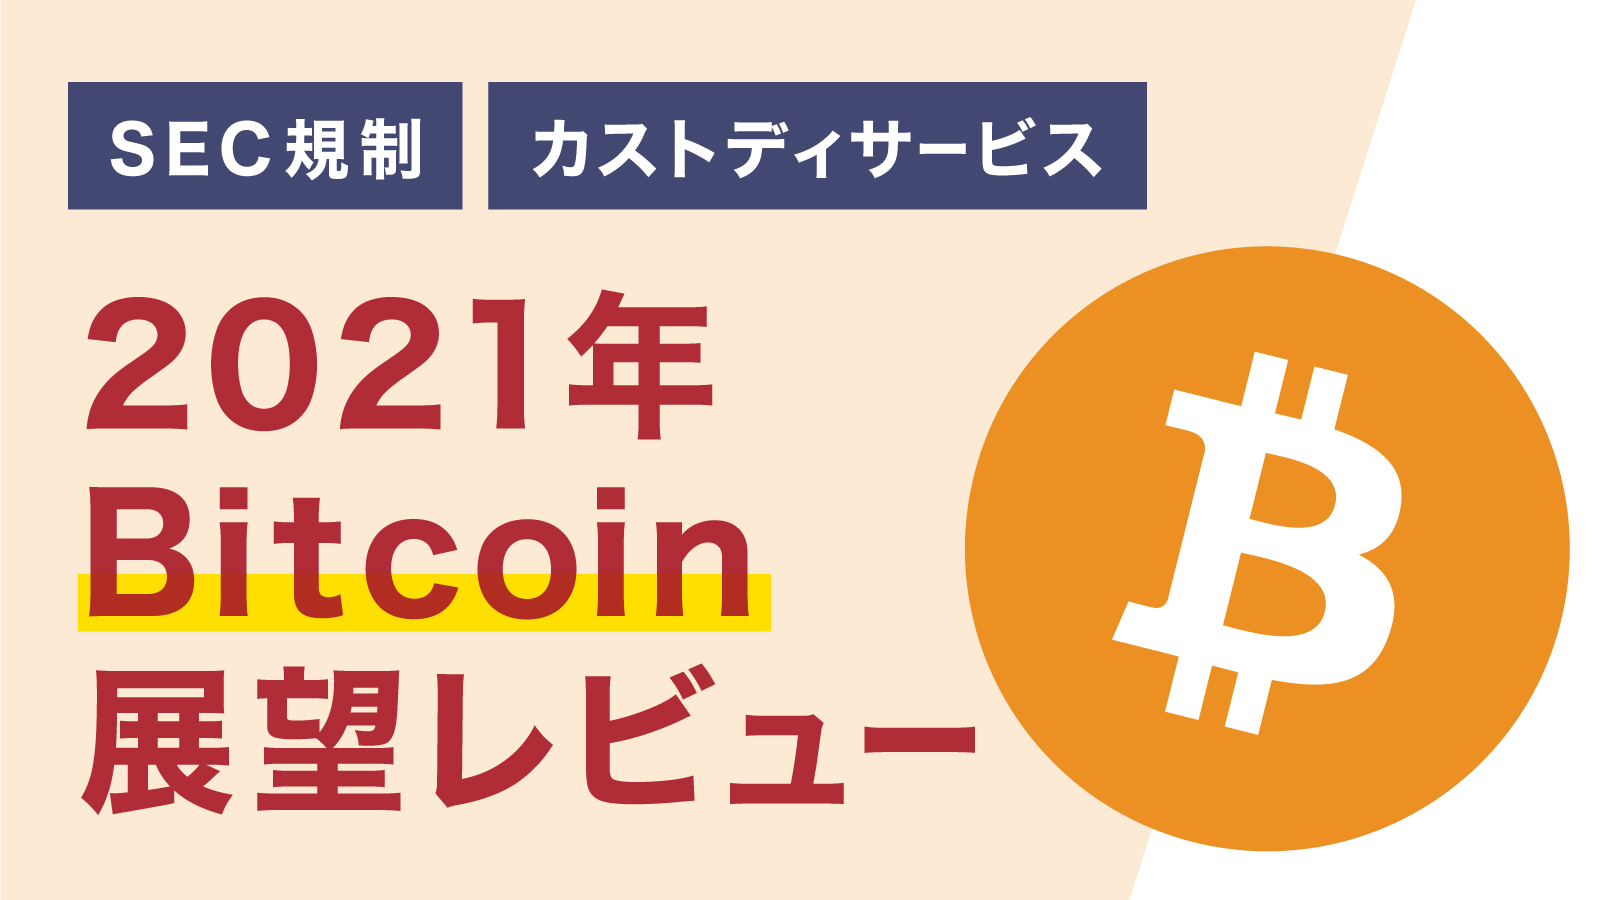 2021年 Bitcoin注目トピック